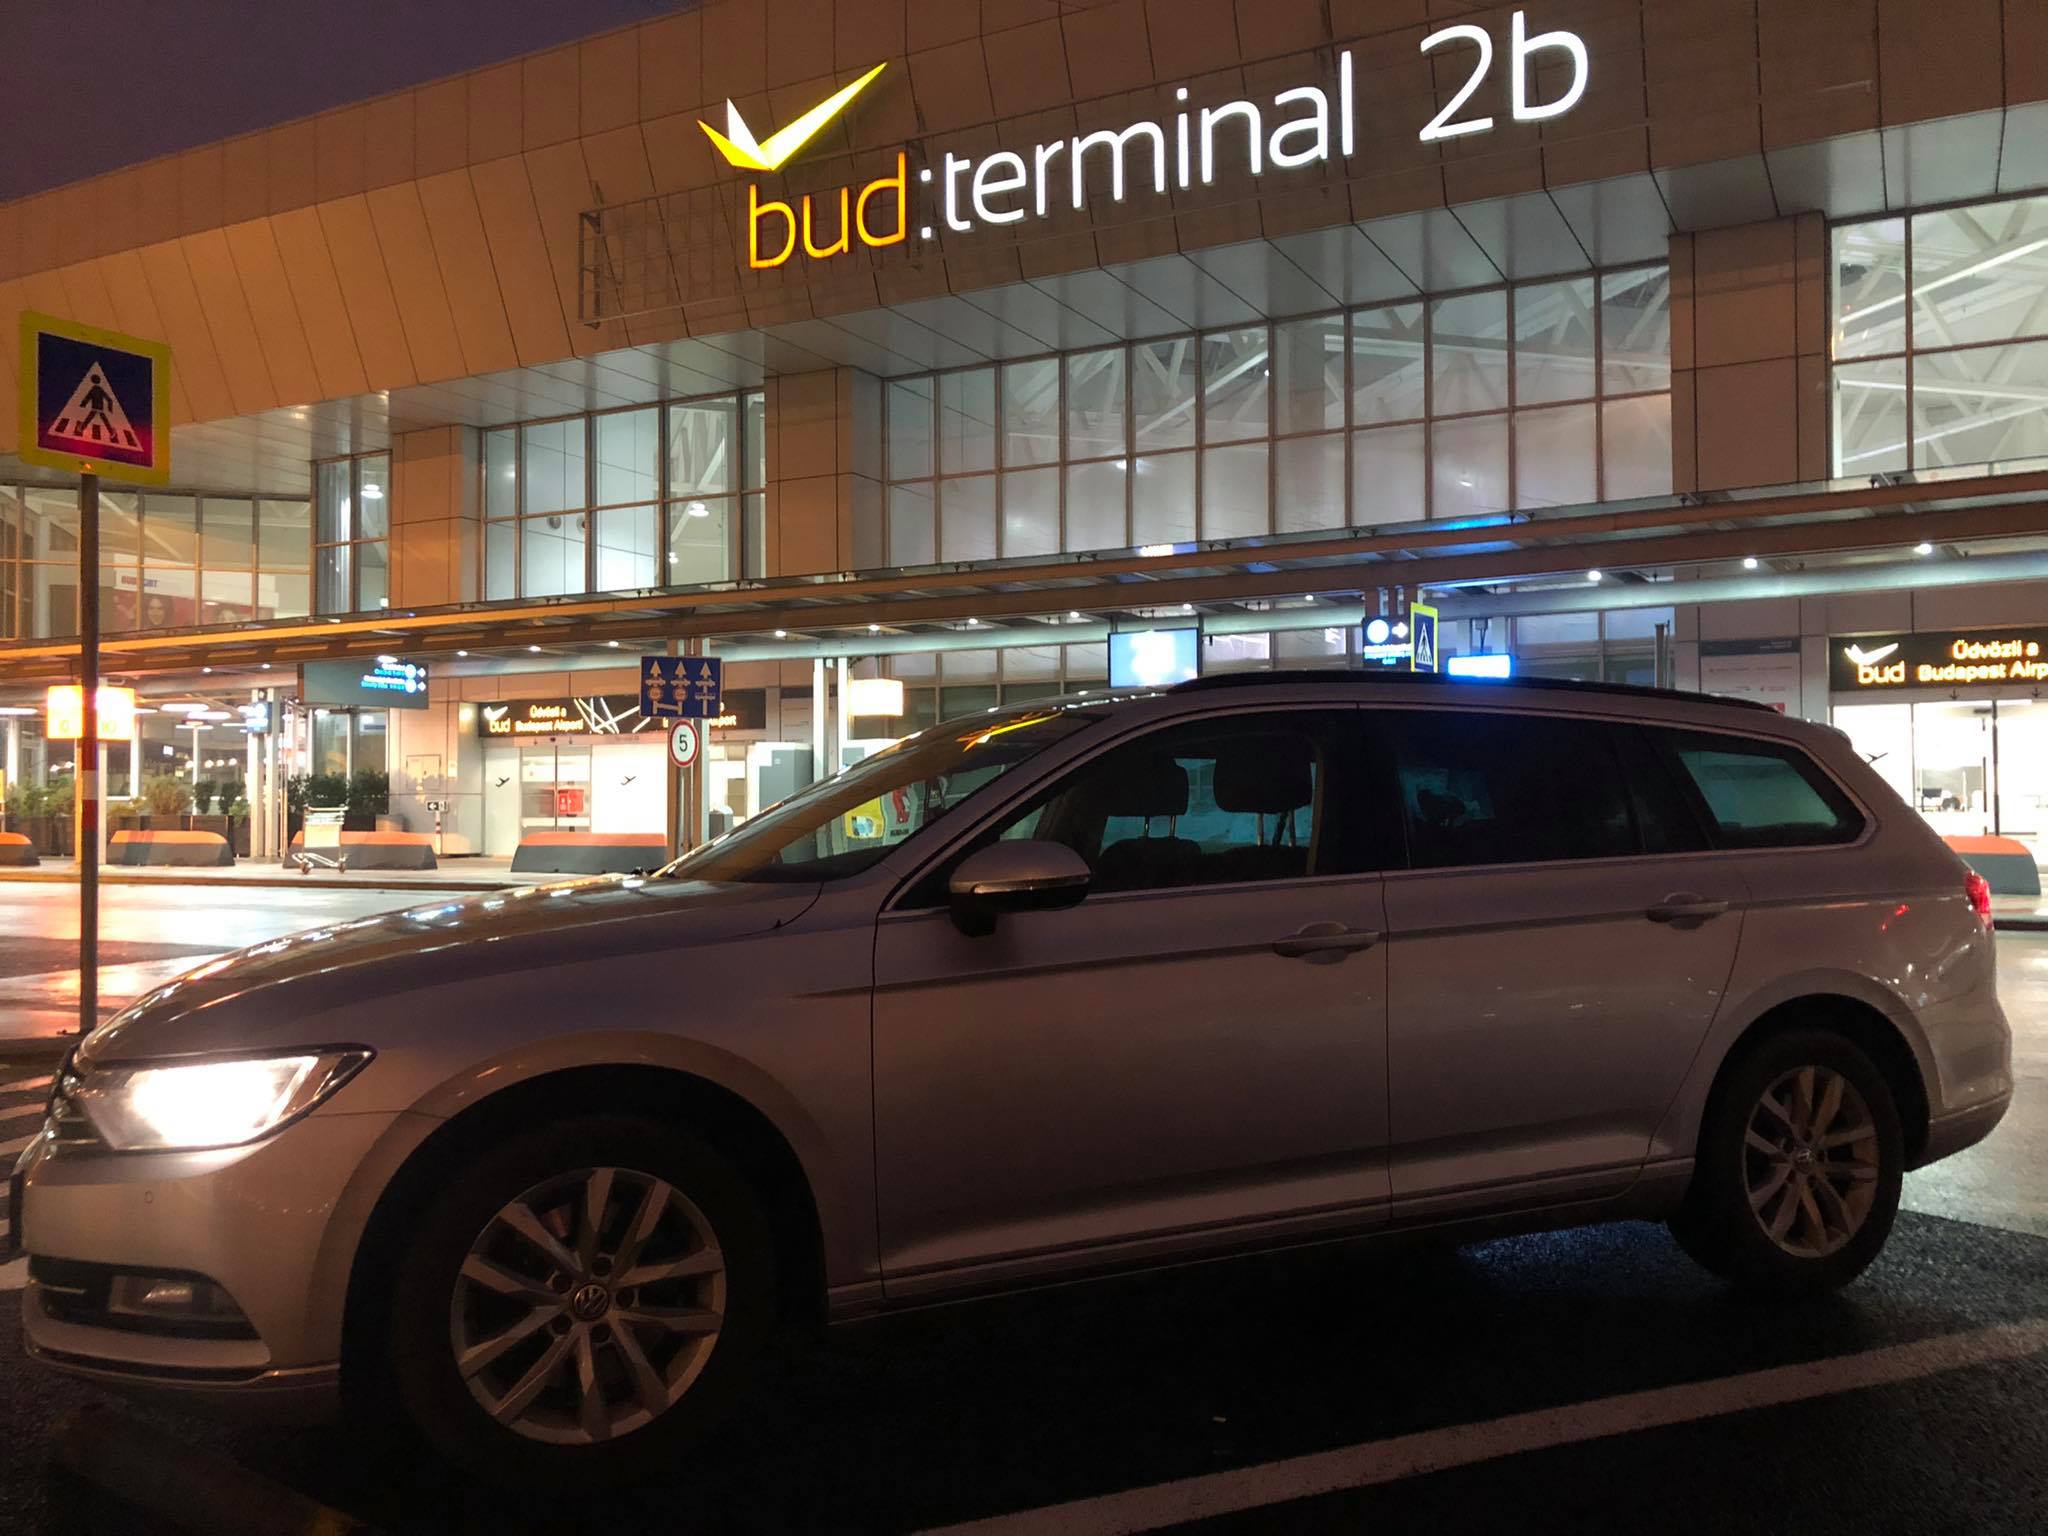 Volkswagen Passat BUD Terminal 2B